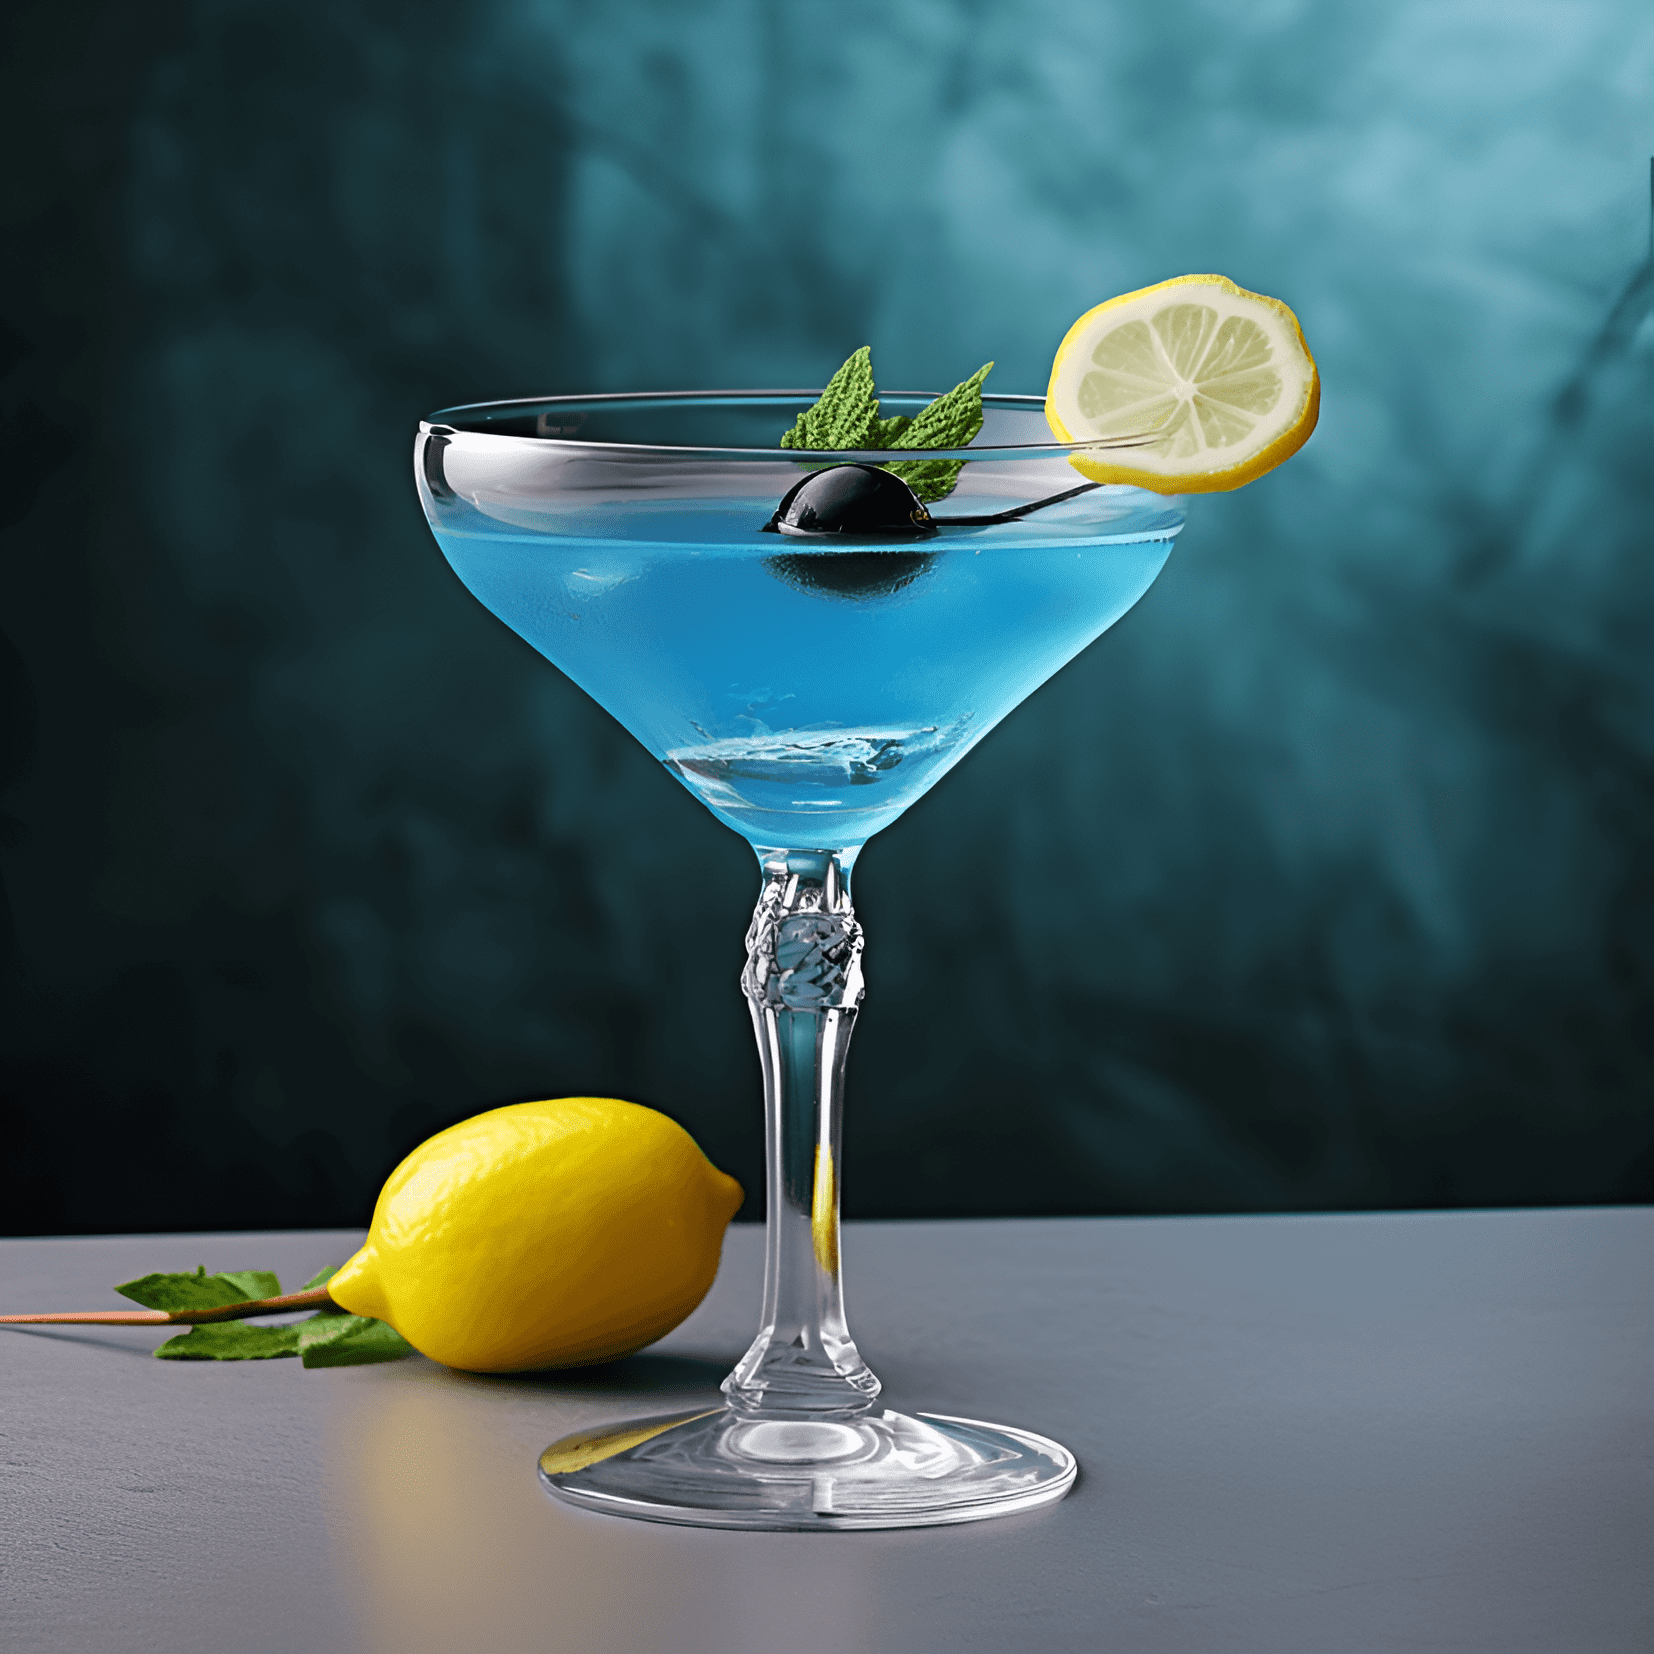 Bluebird Cóctel Receta - El cóctel Bluebird tiene un equilibrio delicioso de sabores dulces y ácidos, con un toque de amargor del gin. La bebida es suave, refrescante y ligeramente afrutada, lo que la convierte en una opción agradable para aquellos que aprecian un cóctel bien equilibrado.